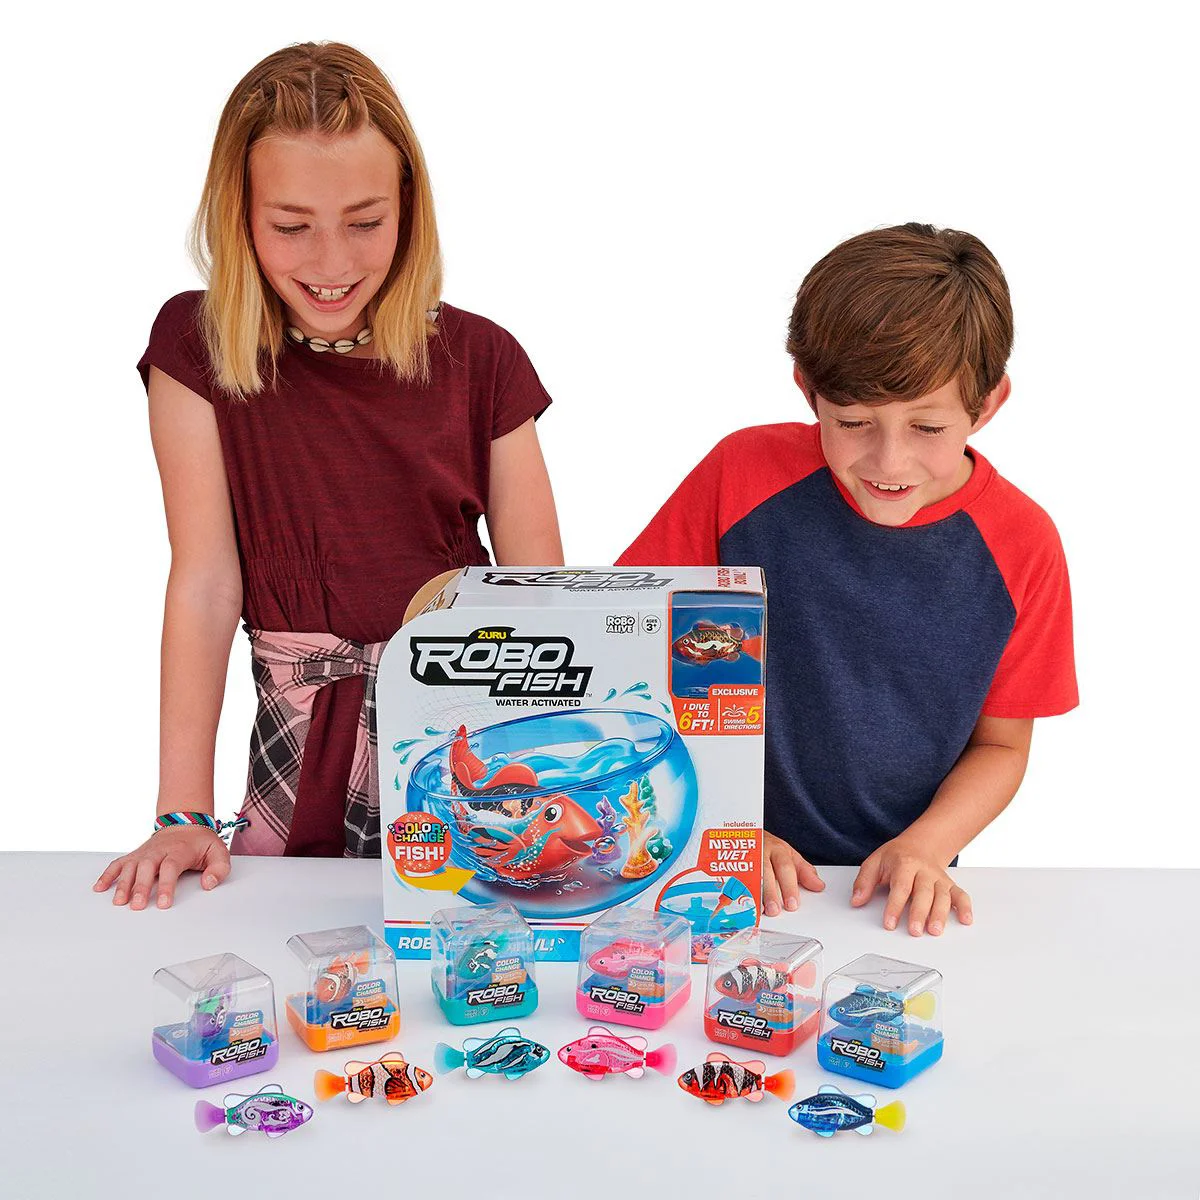 Интерактивная игрушка Robo Alive Рыба RoboFish, фиолетовый